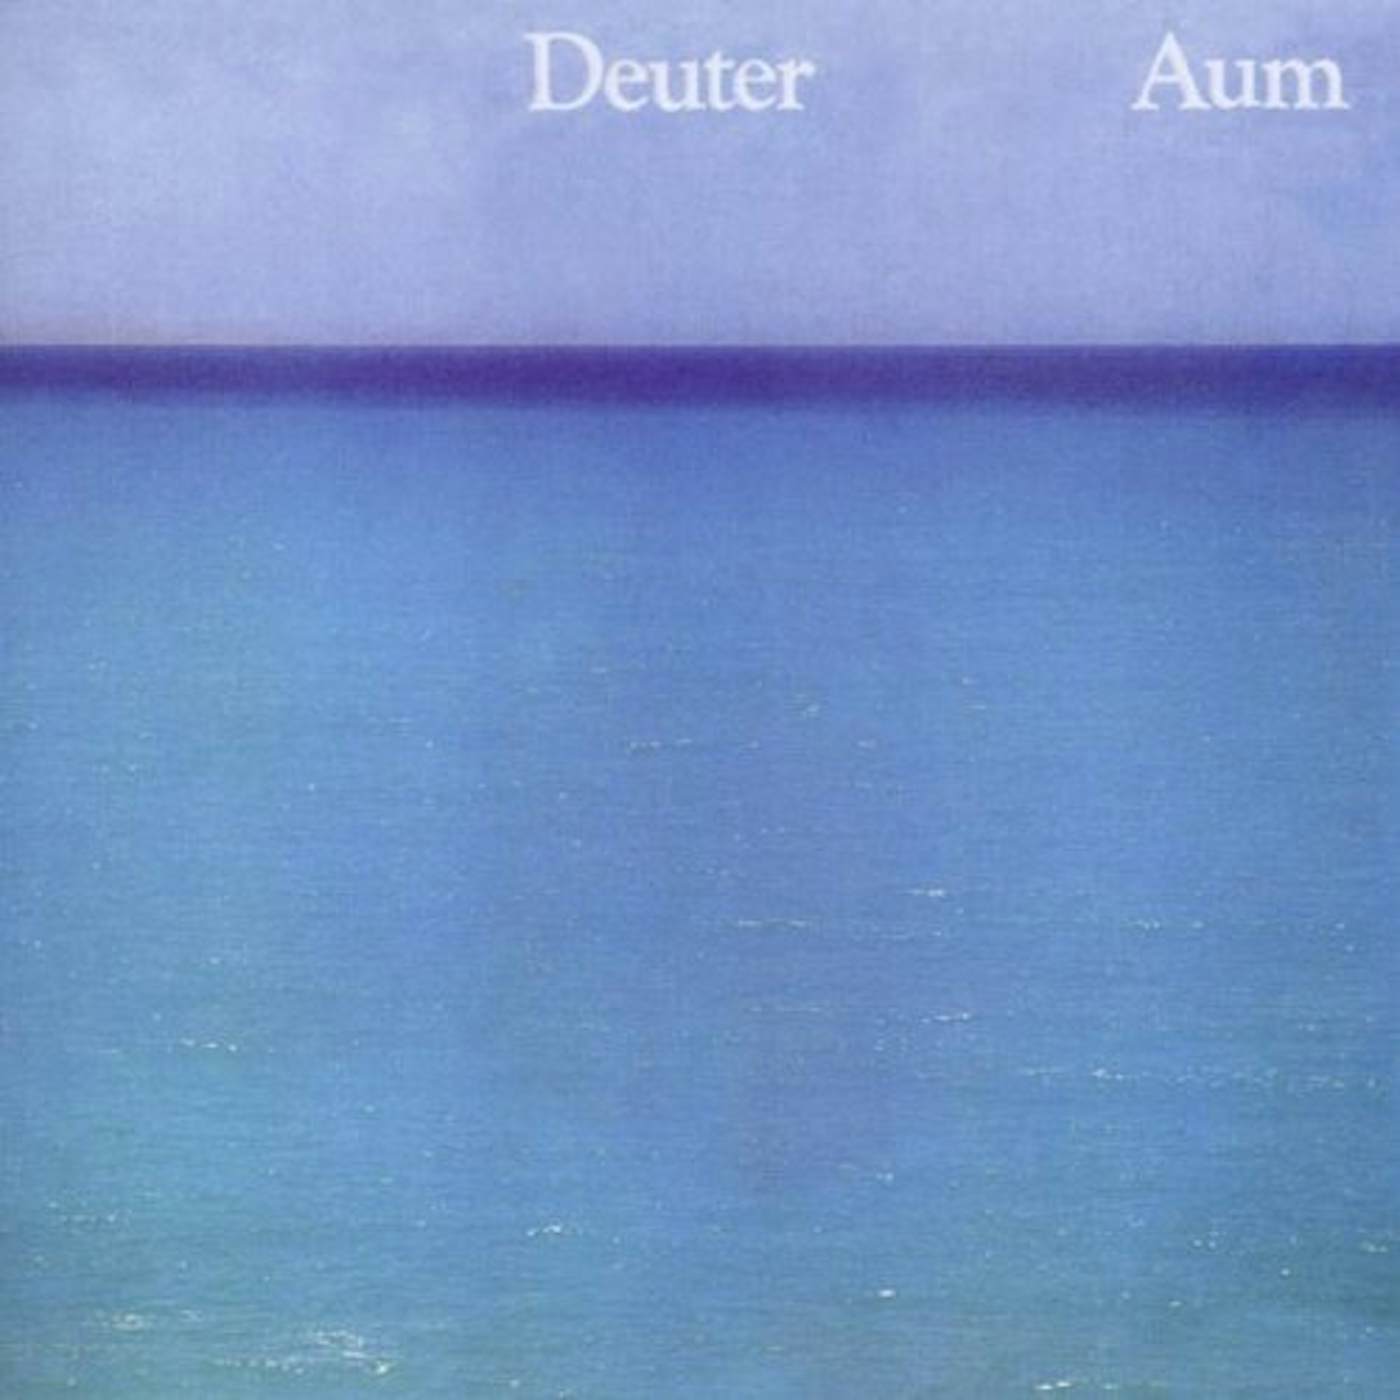 Deuter Aum Vinyl Record